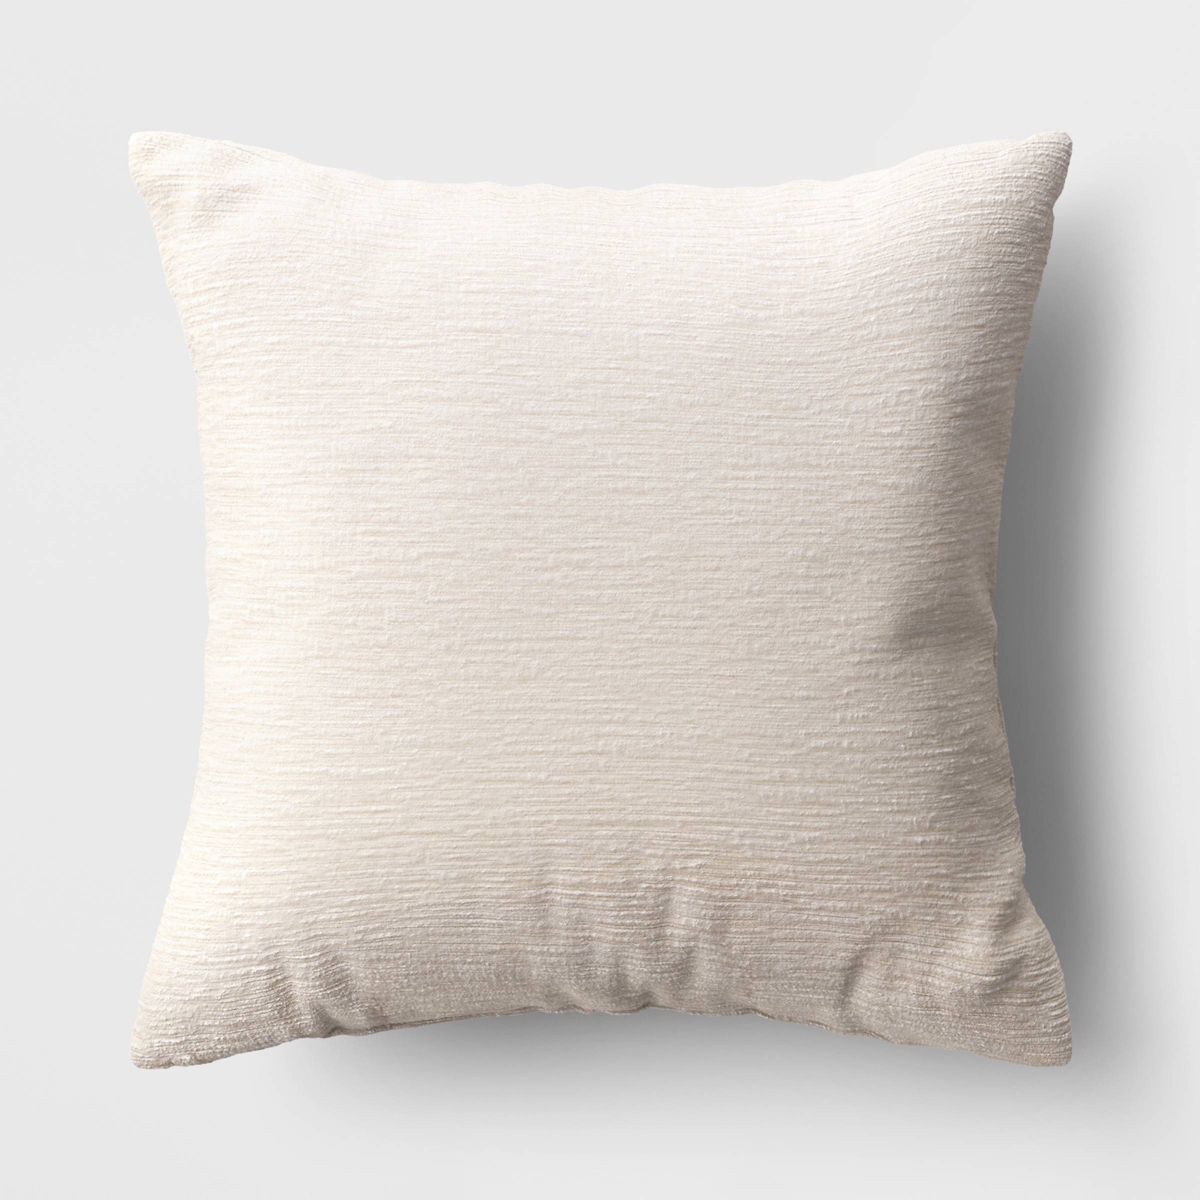 Textured Velvet Square Throw Pillow Ivory - Threshold™ | Target